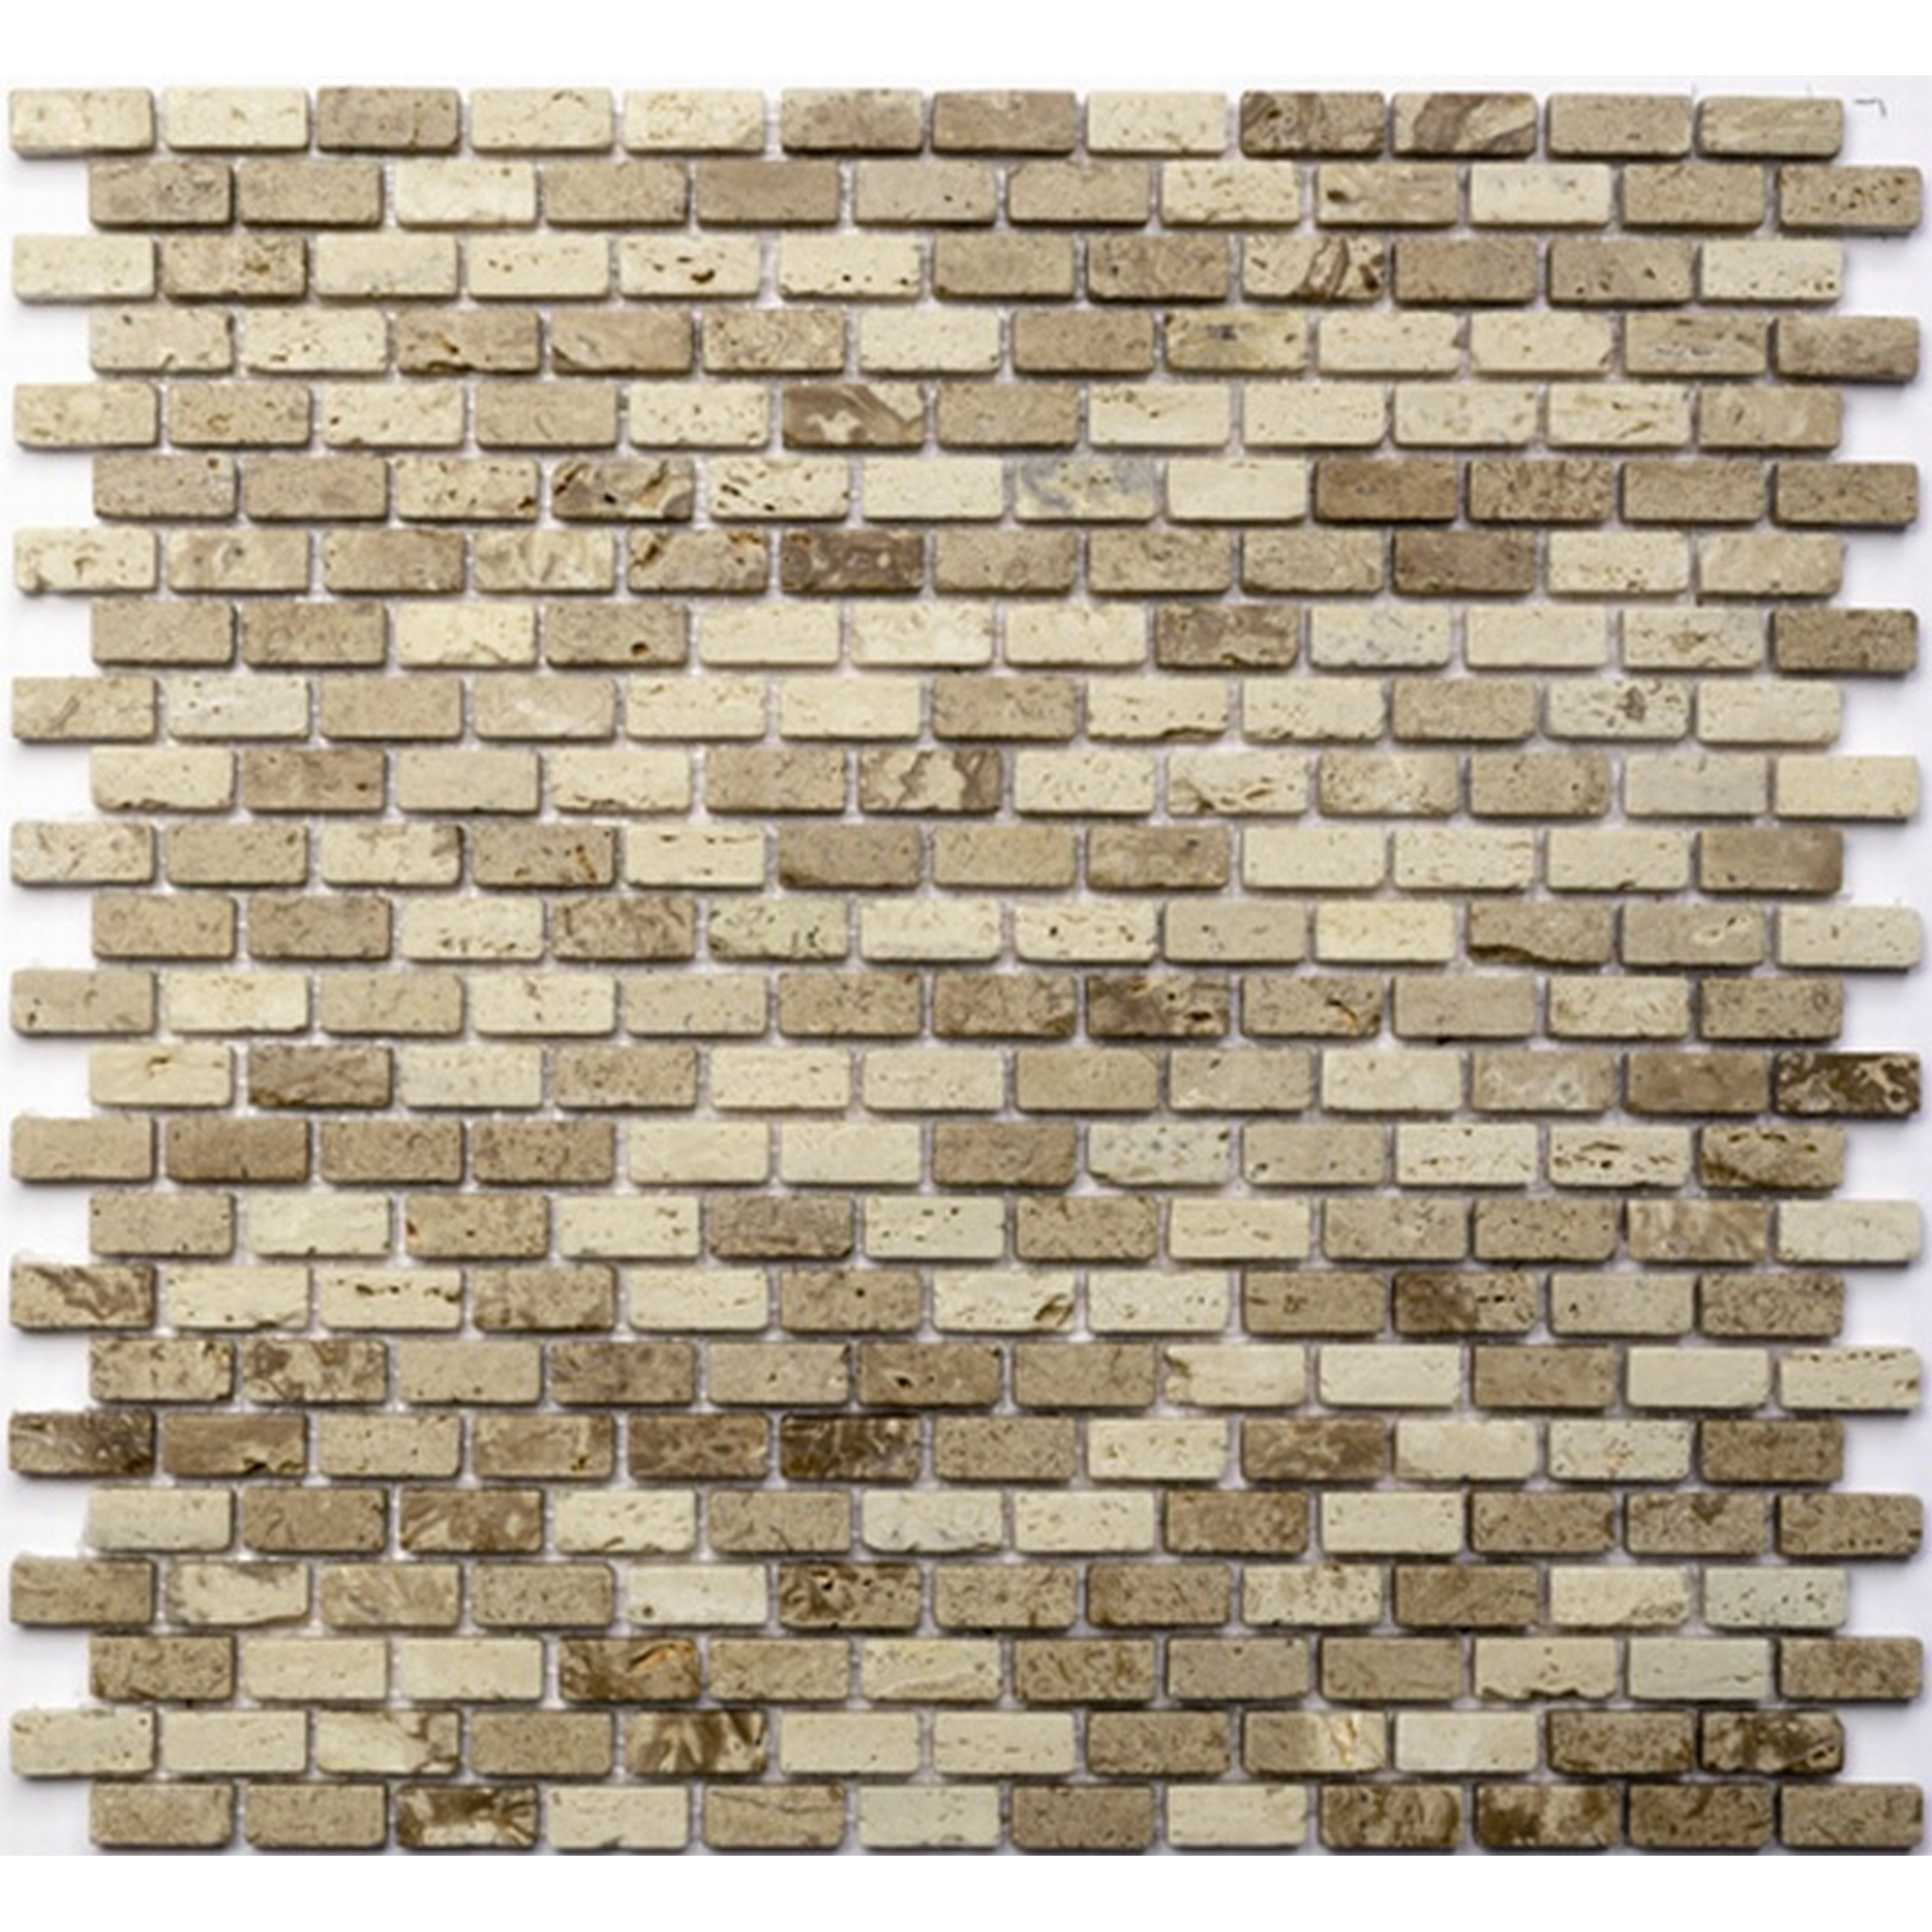 Mosaikfliese 'Brick' Naturstein beige 30 x 30 cm + product picture